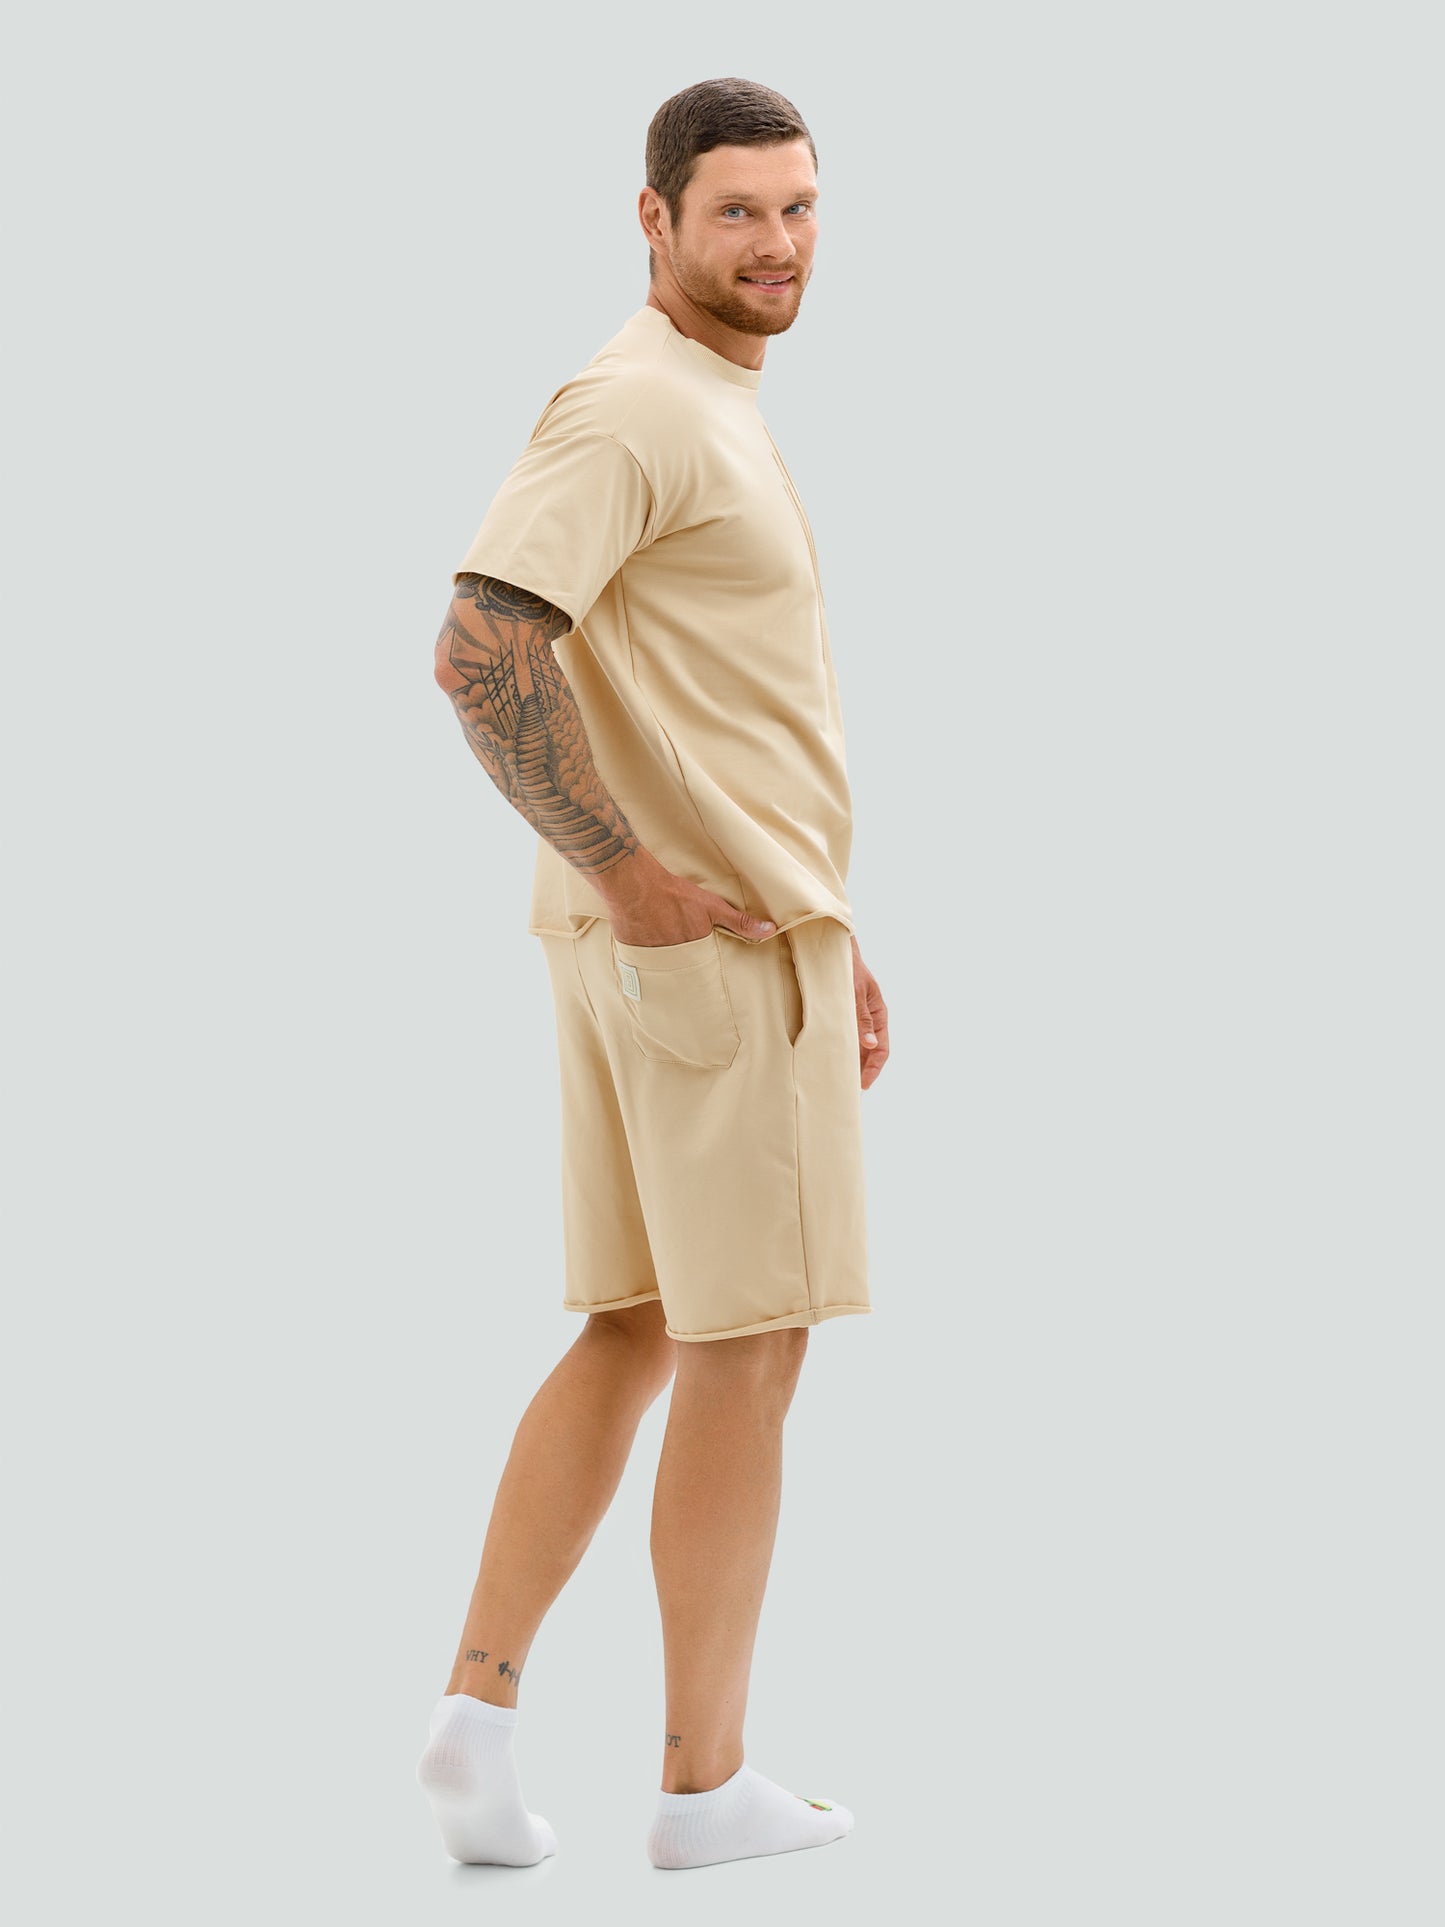 Kreminis šortų ir marškinėlių komplektas vyrams "Hot summer"